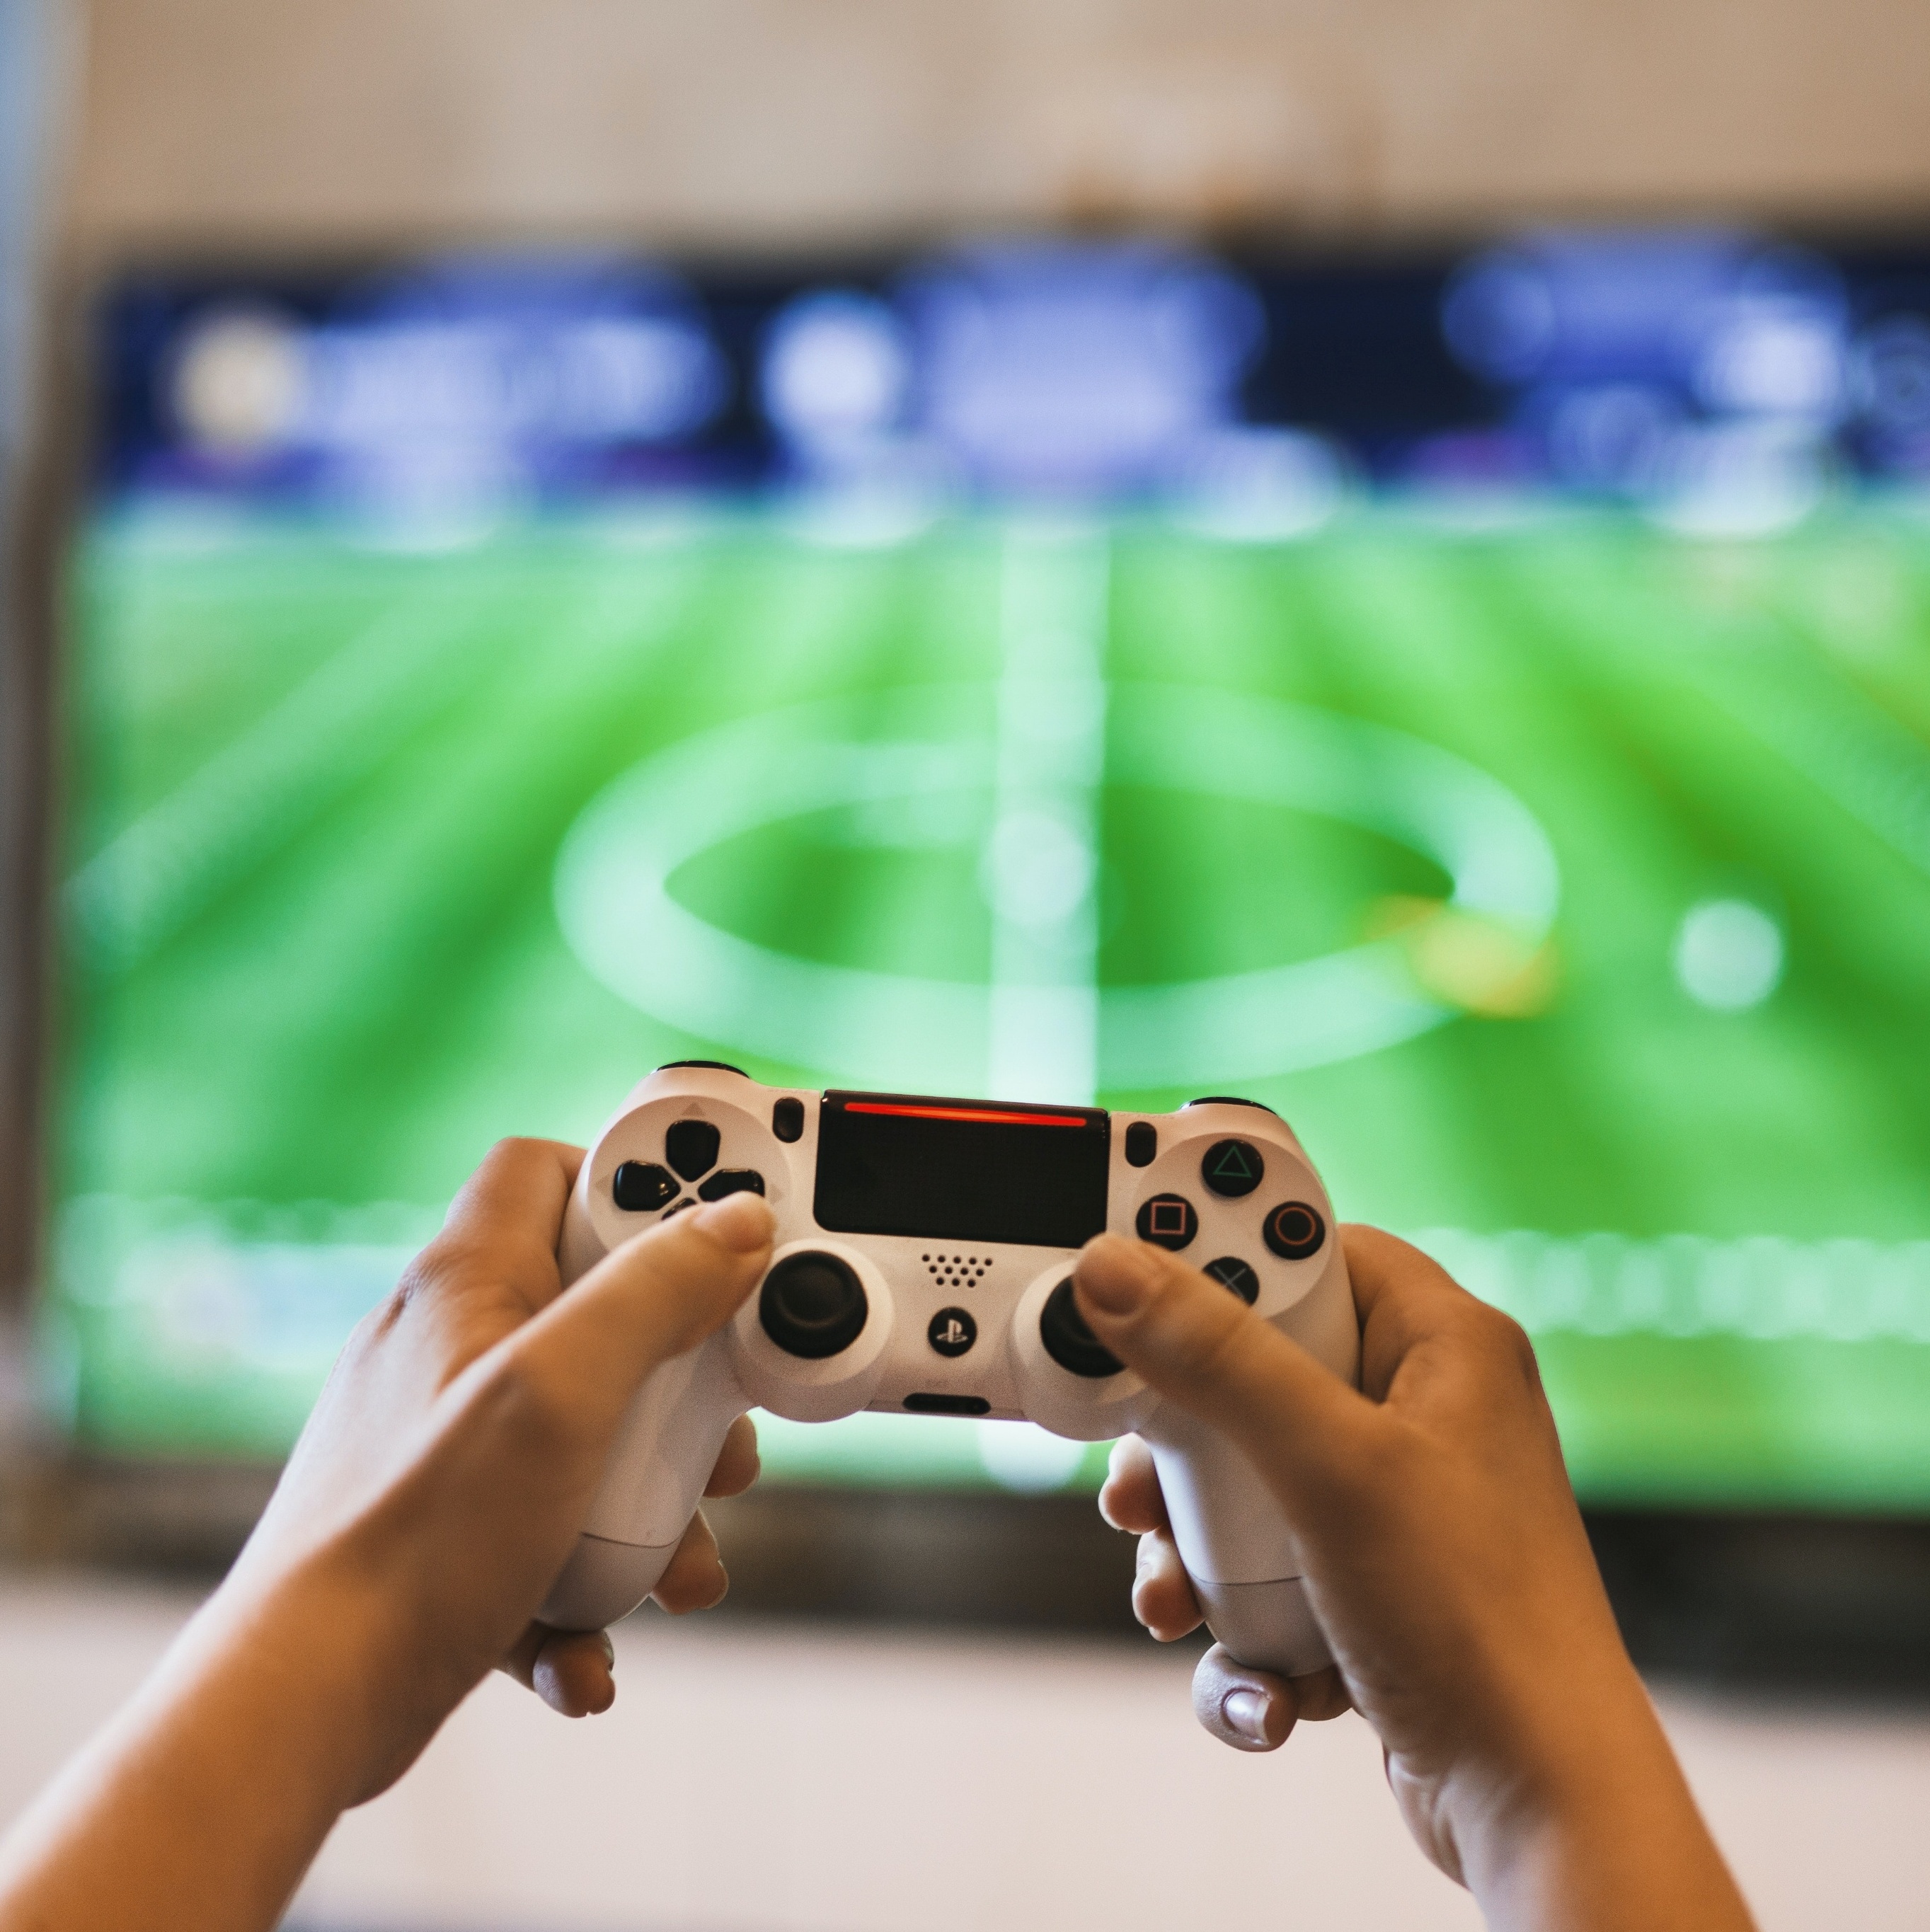 Jogos de videogame: vale mais a pena comprar a versão digital ou física?, Tecnologia